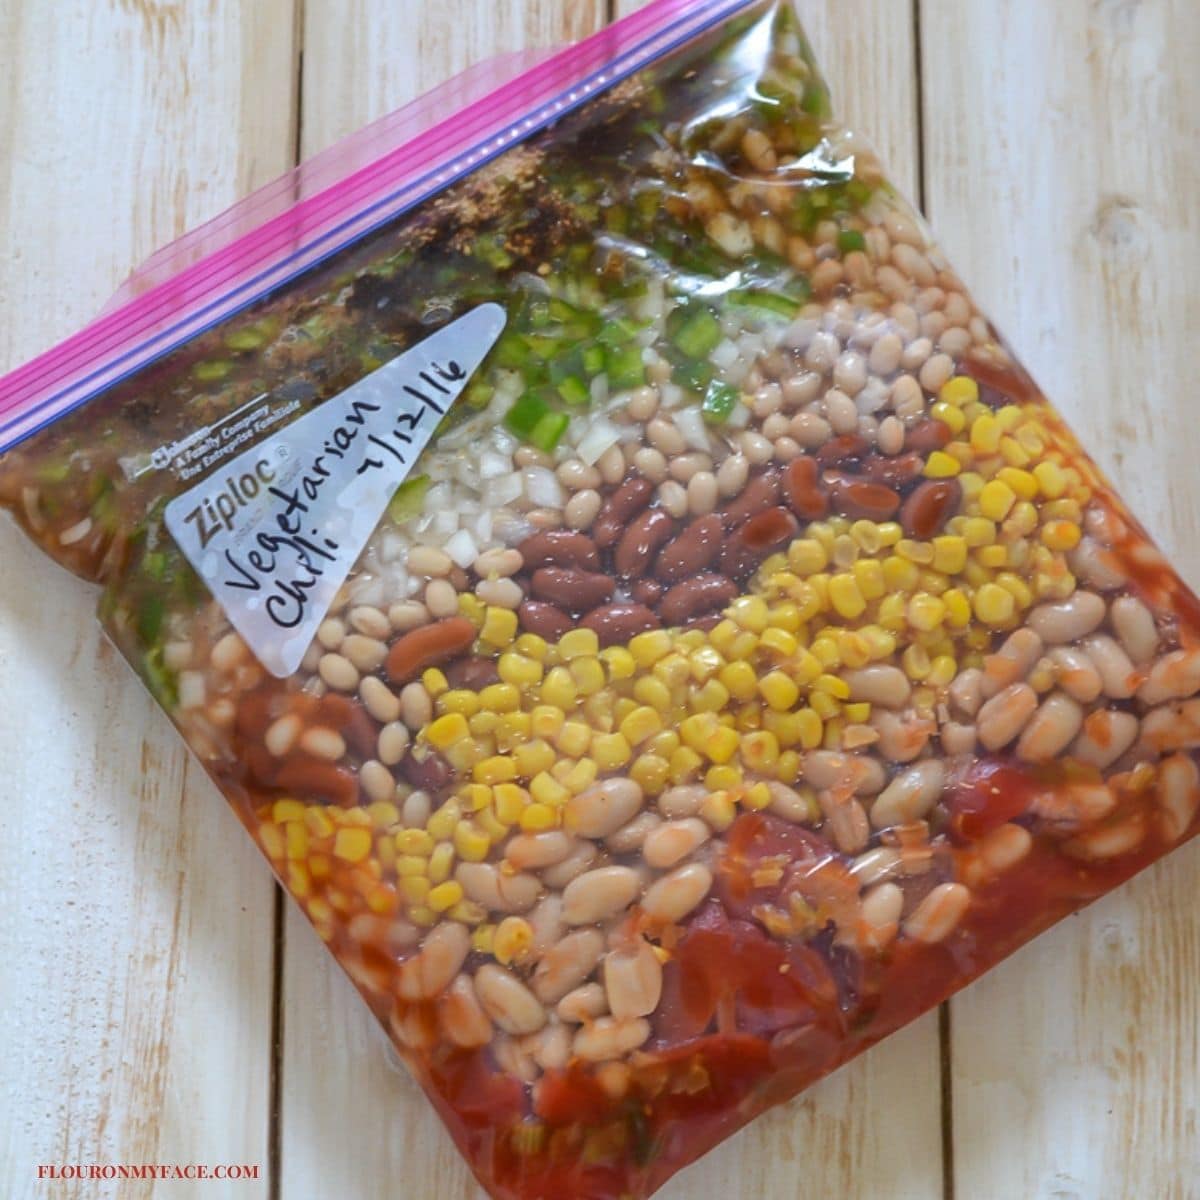 Vegetarian chili ingredients layered in a freezer bag.